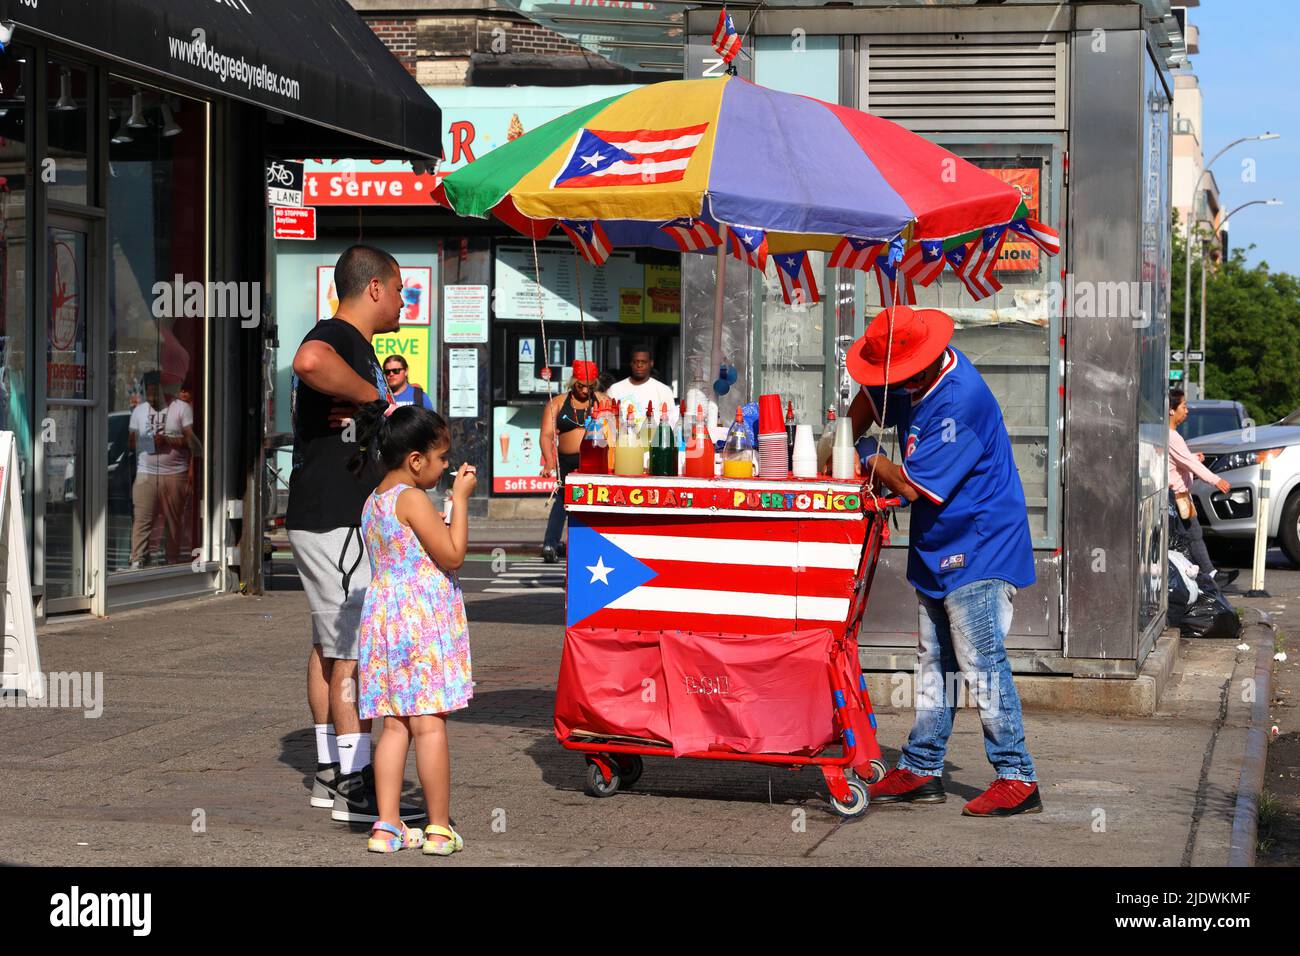 Menschen, die Piragua-rasierte Eiswürfel von einem Straßenhändler mit einem farbenfrohen Wagen kaufen, der mit Fahnen von Puerto Rico in Manhattans Lower East Side, New York, geschmückt ist Stockfoto